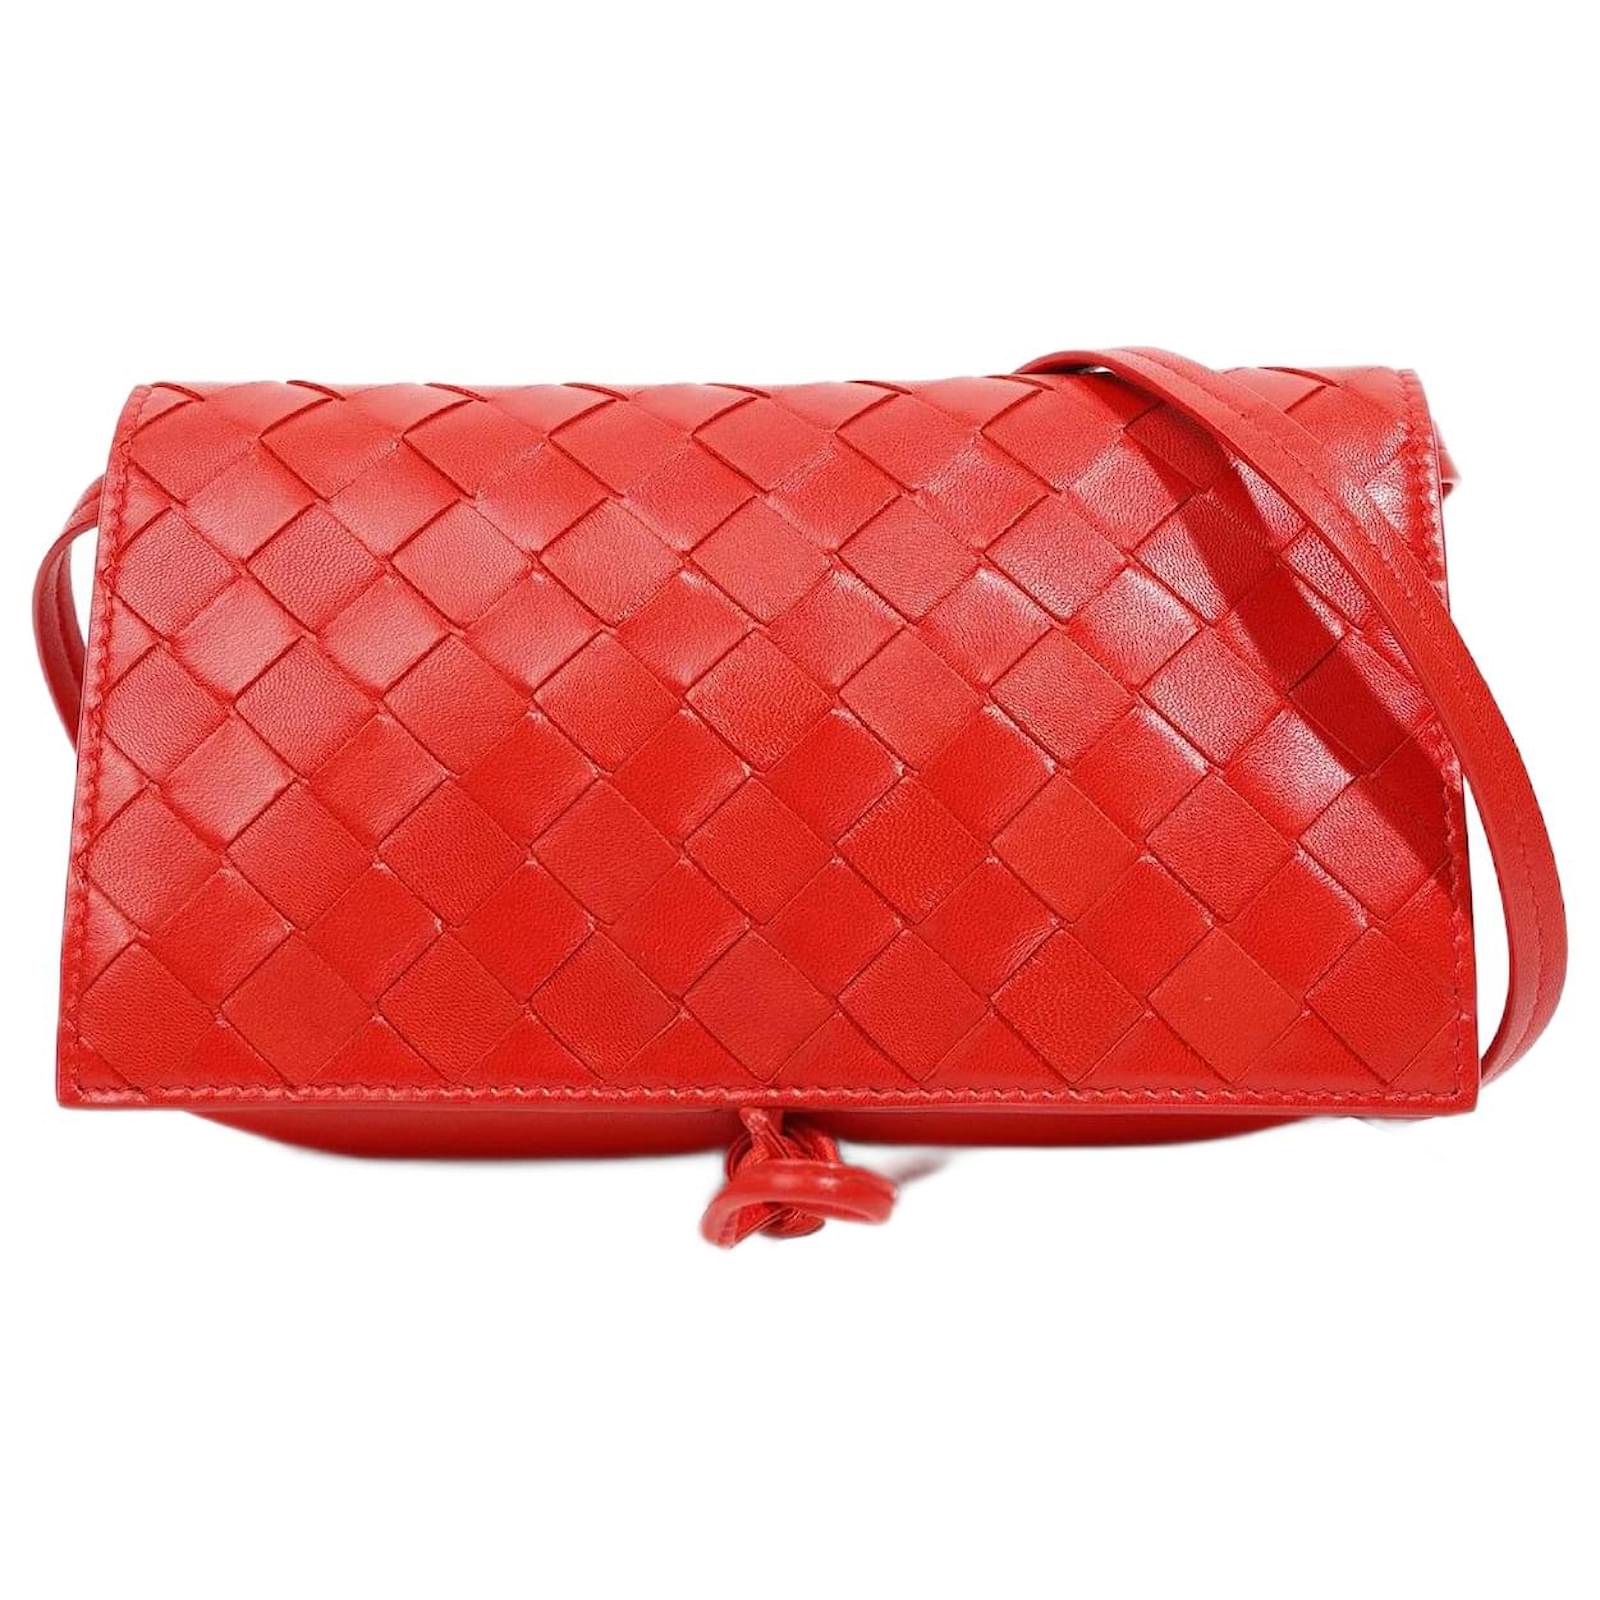 Bottega Veneta Woman's Handbag